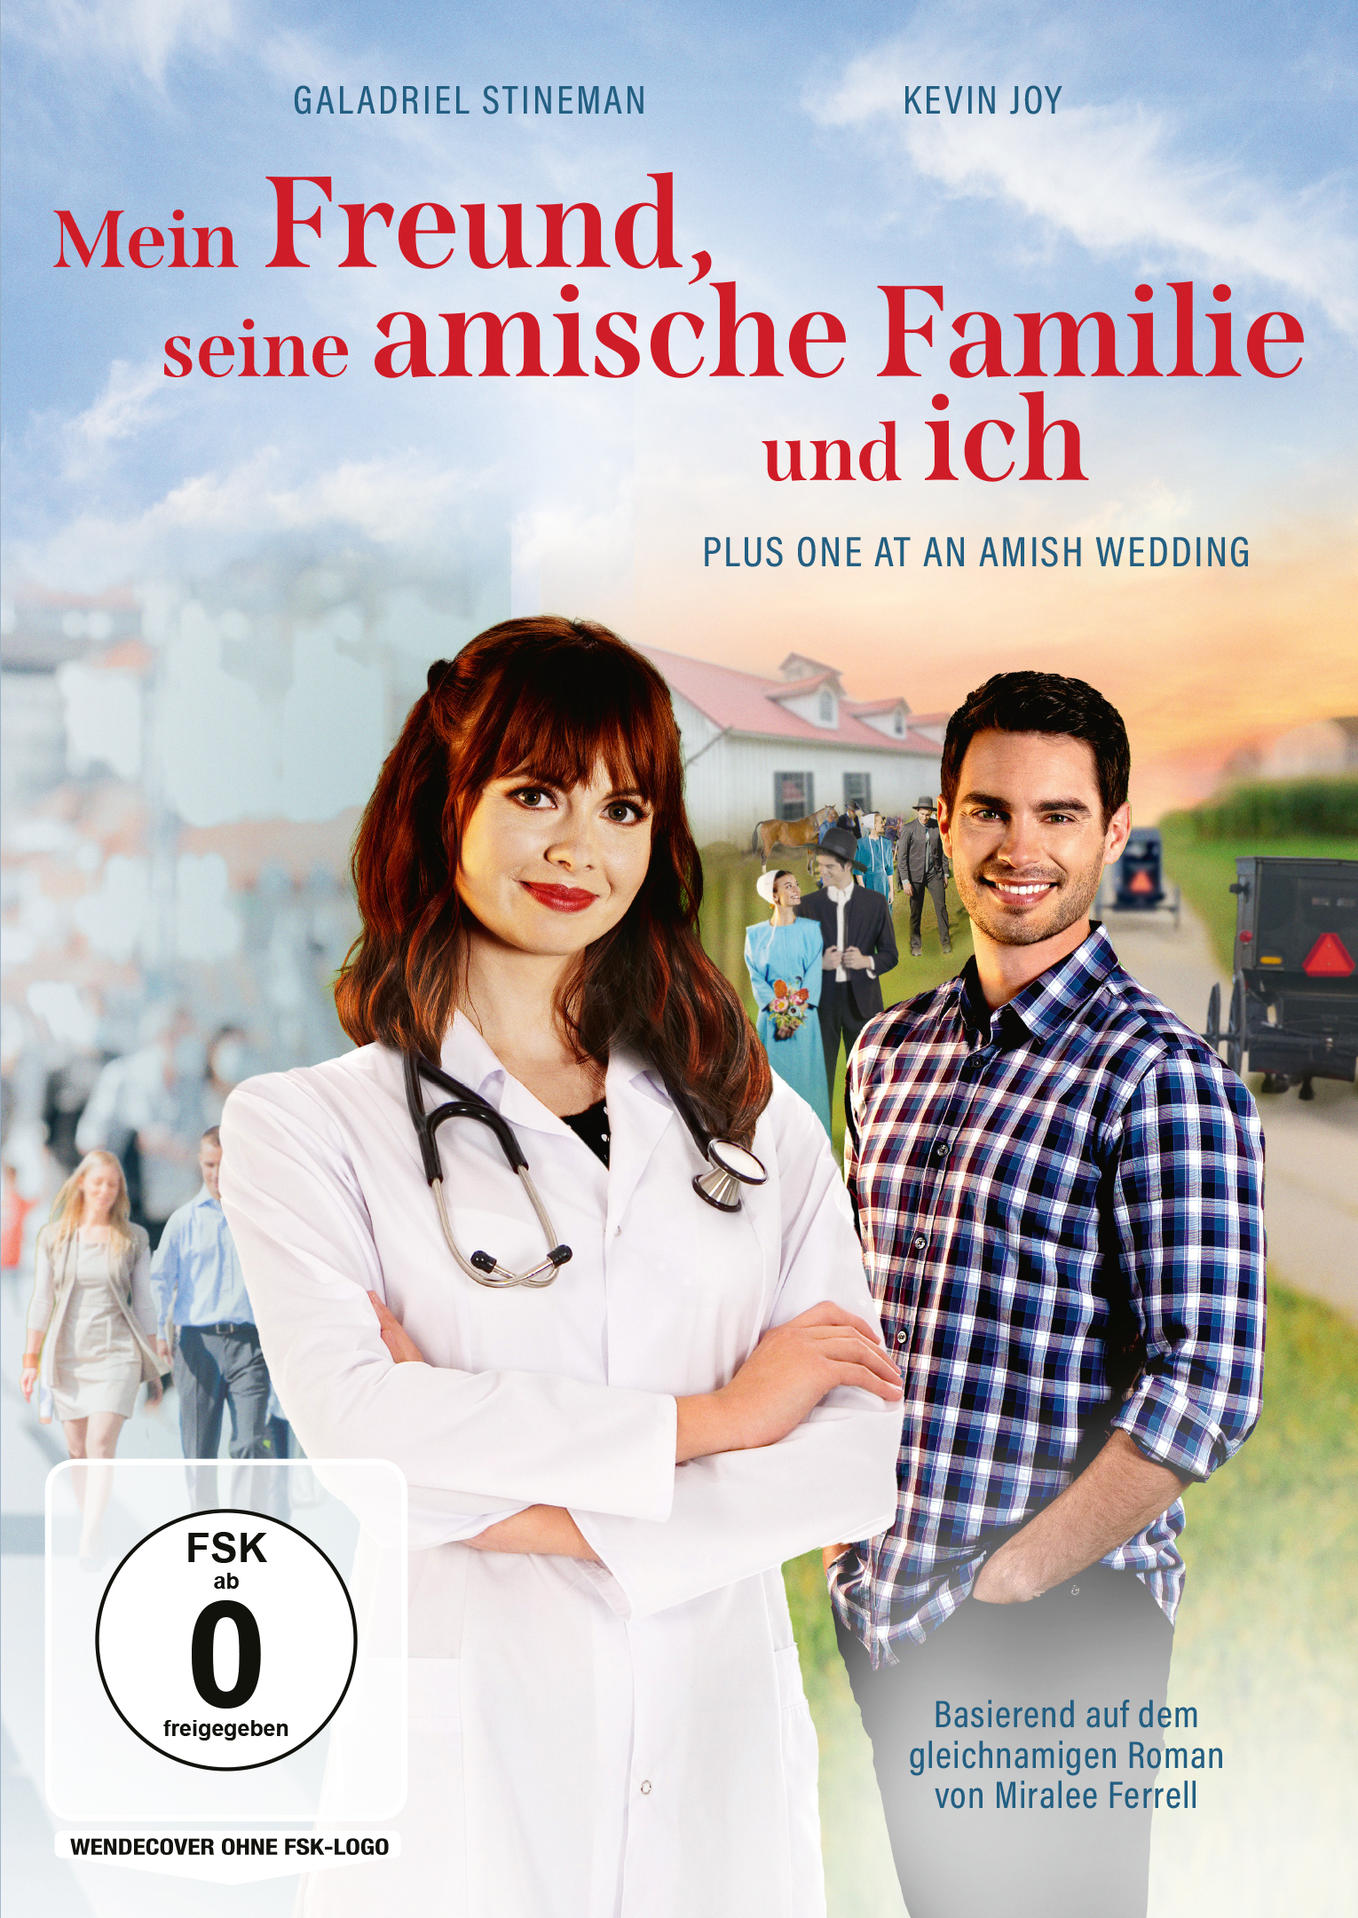 Freund, amische und Familie Amish Wedding One seine Plus an - ich at DVD Mein